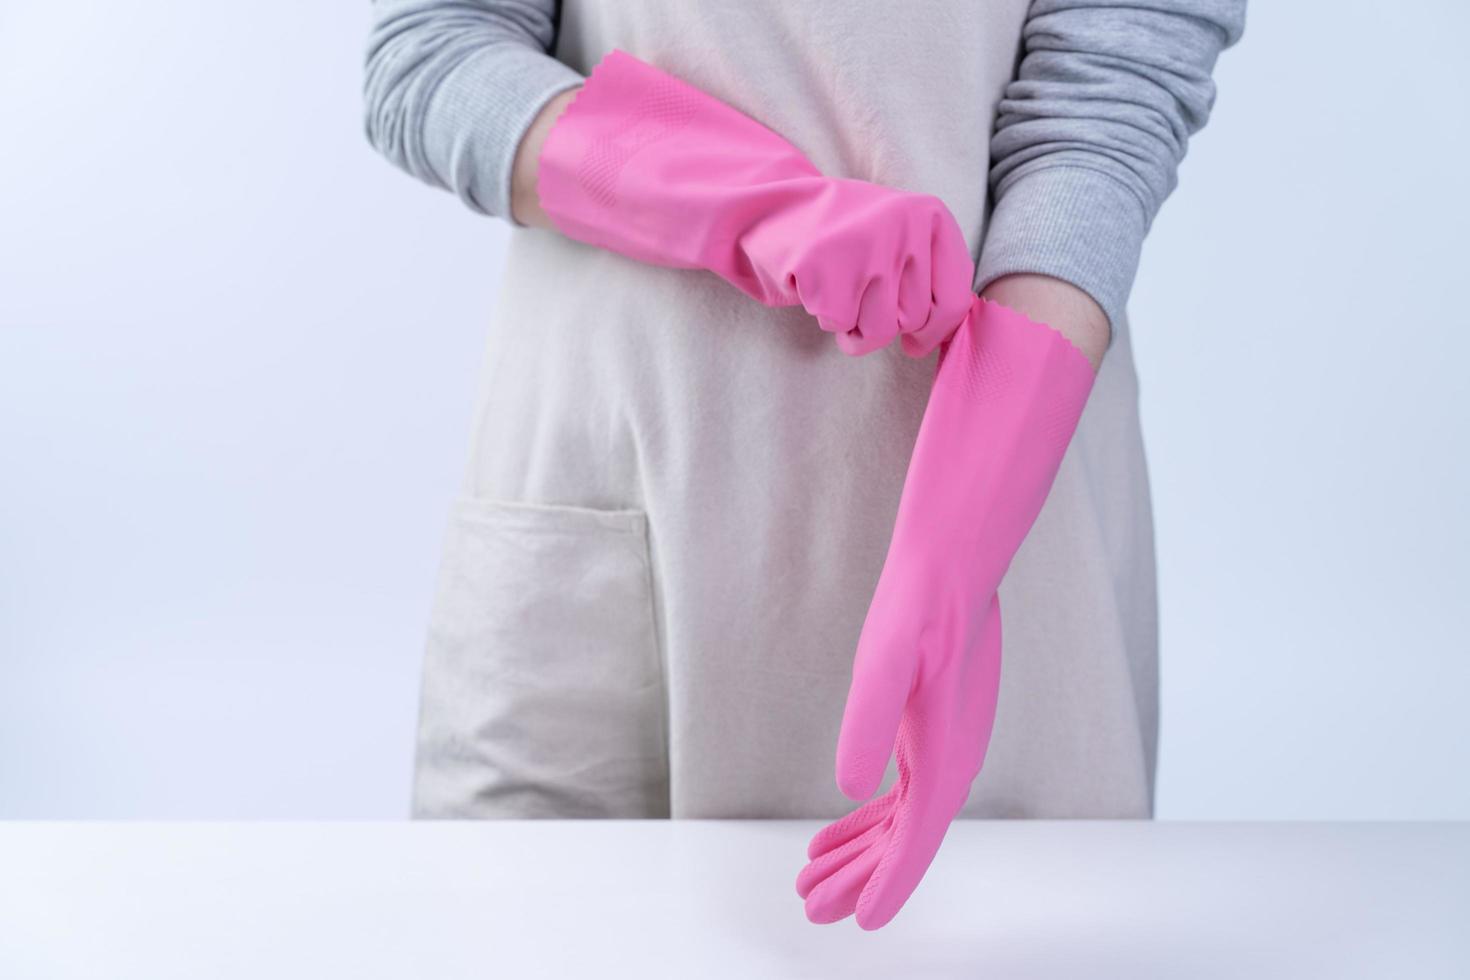 jonge vrouw huishoudster in schort draagt roze handschoenen om de tafel schoon te maken, concept van het voorkomen van virusinfectie, huishoudelijke dienst, close-up. foto